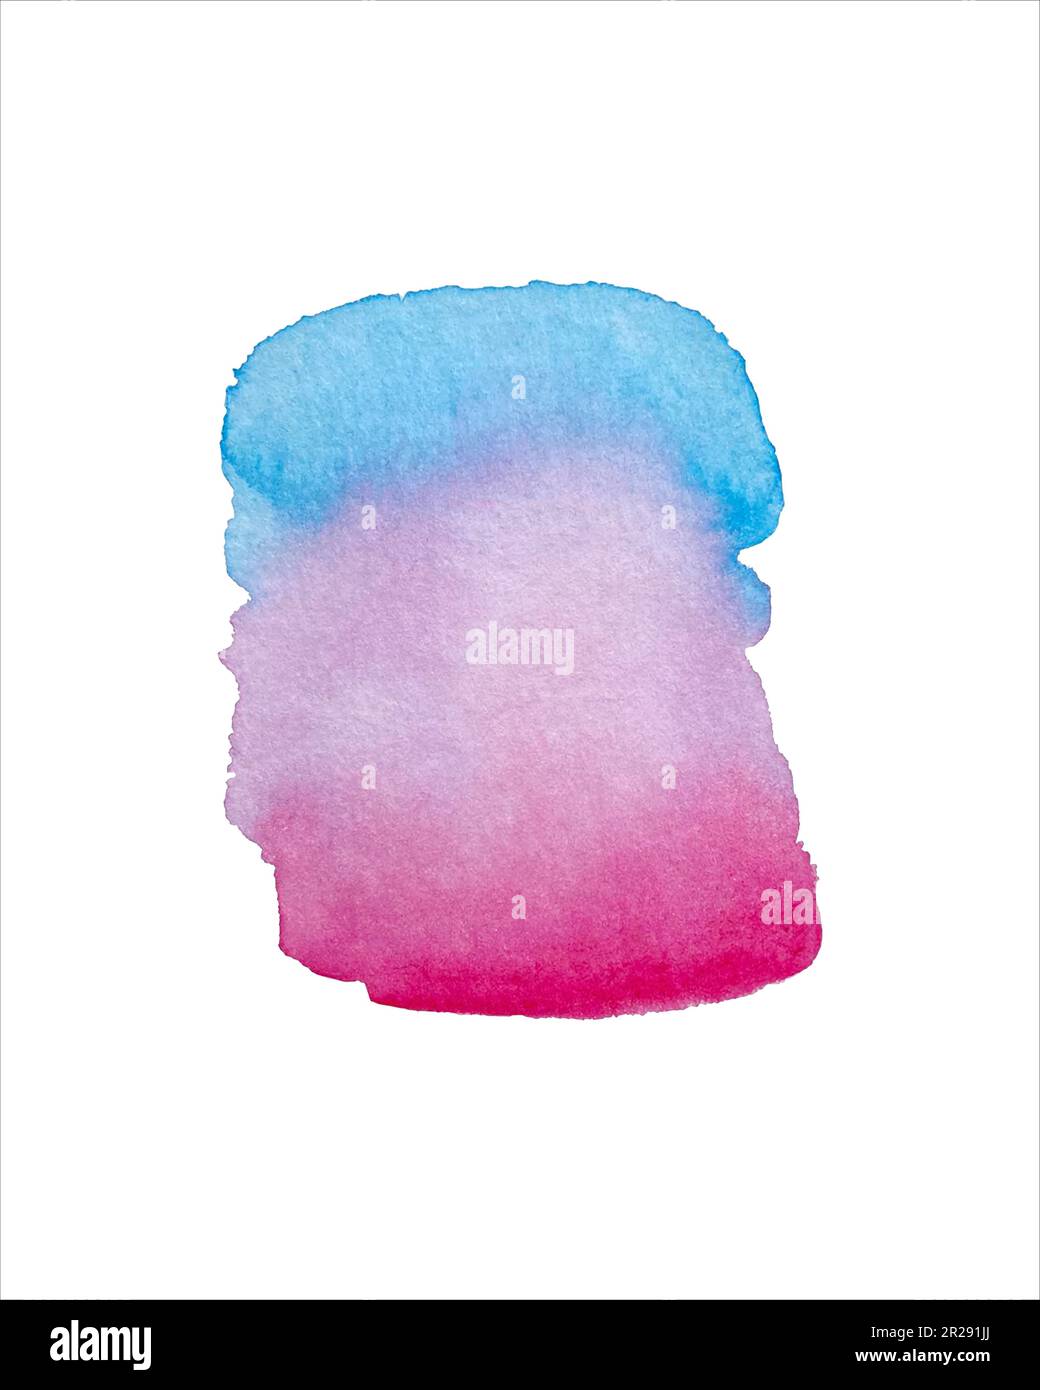 Acquerello astratto mano pittura texture isolato su sfondo bianco, rosa e blu acquerello texture fondo. Illustrazione vettoriale Illustrazione Vettoriale